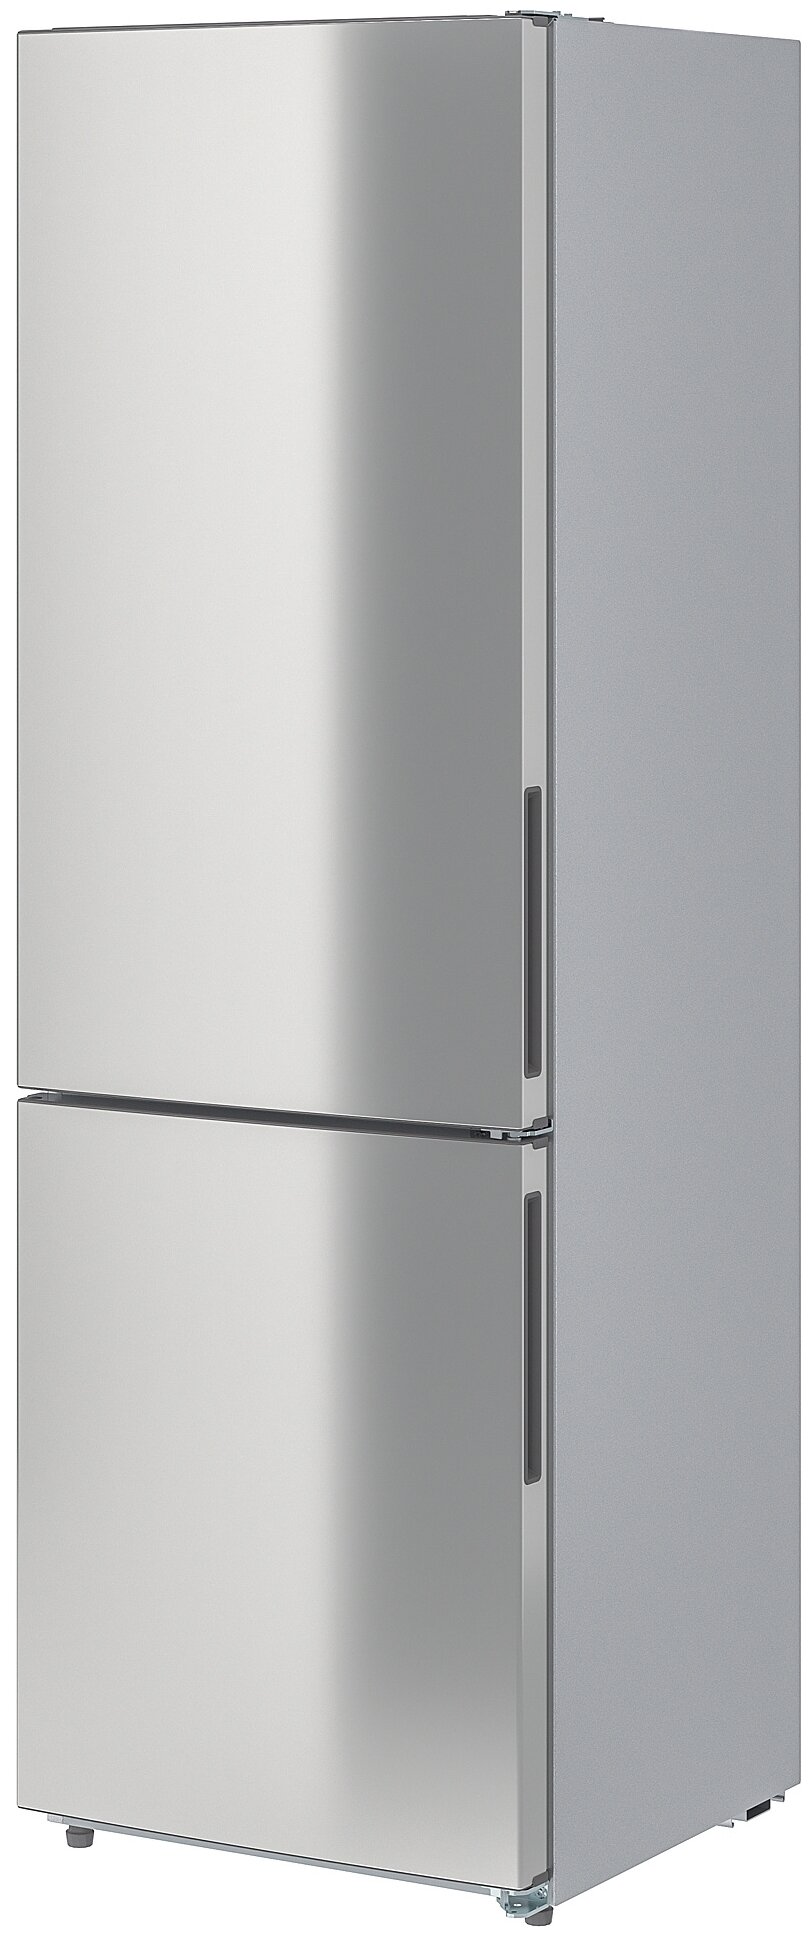 Холодильник ИКЕА МЕДГОНГ 60494843/60494838 — купить по низкой цене на Яндекс Маркете